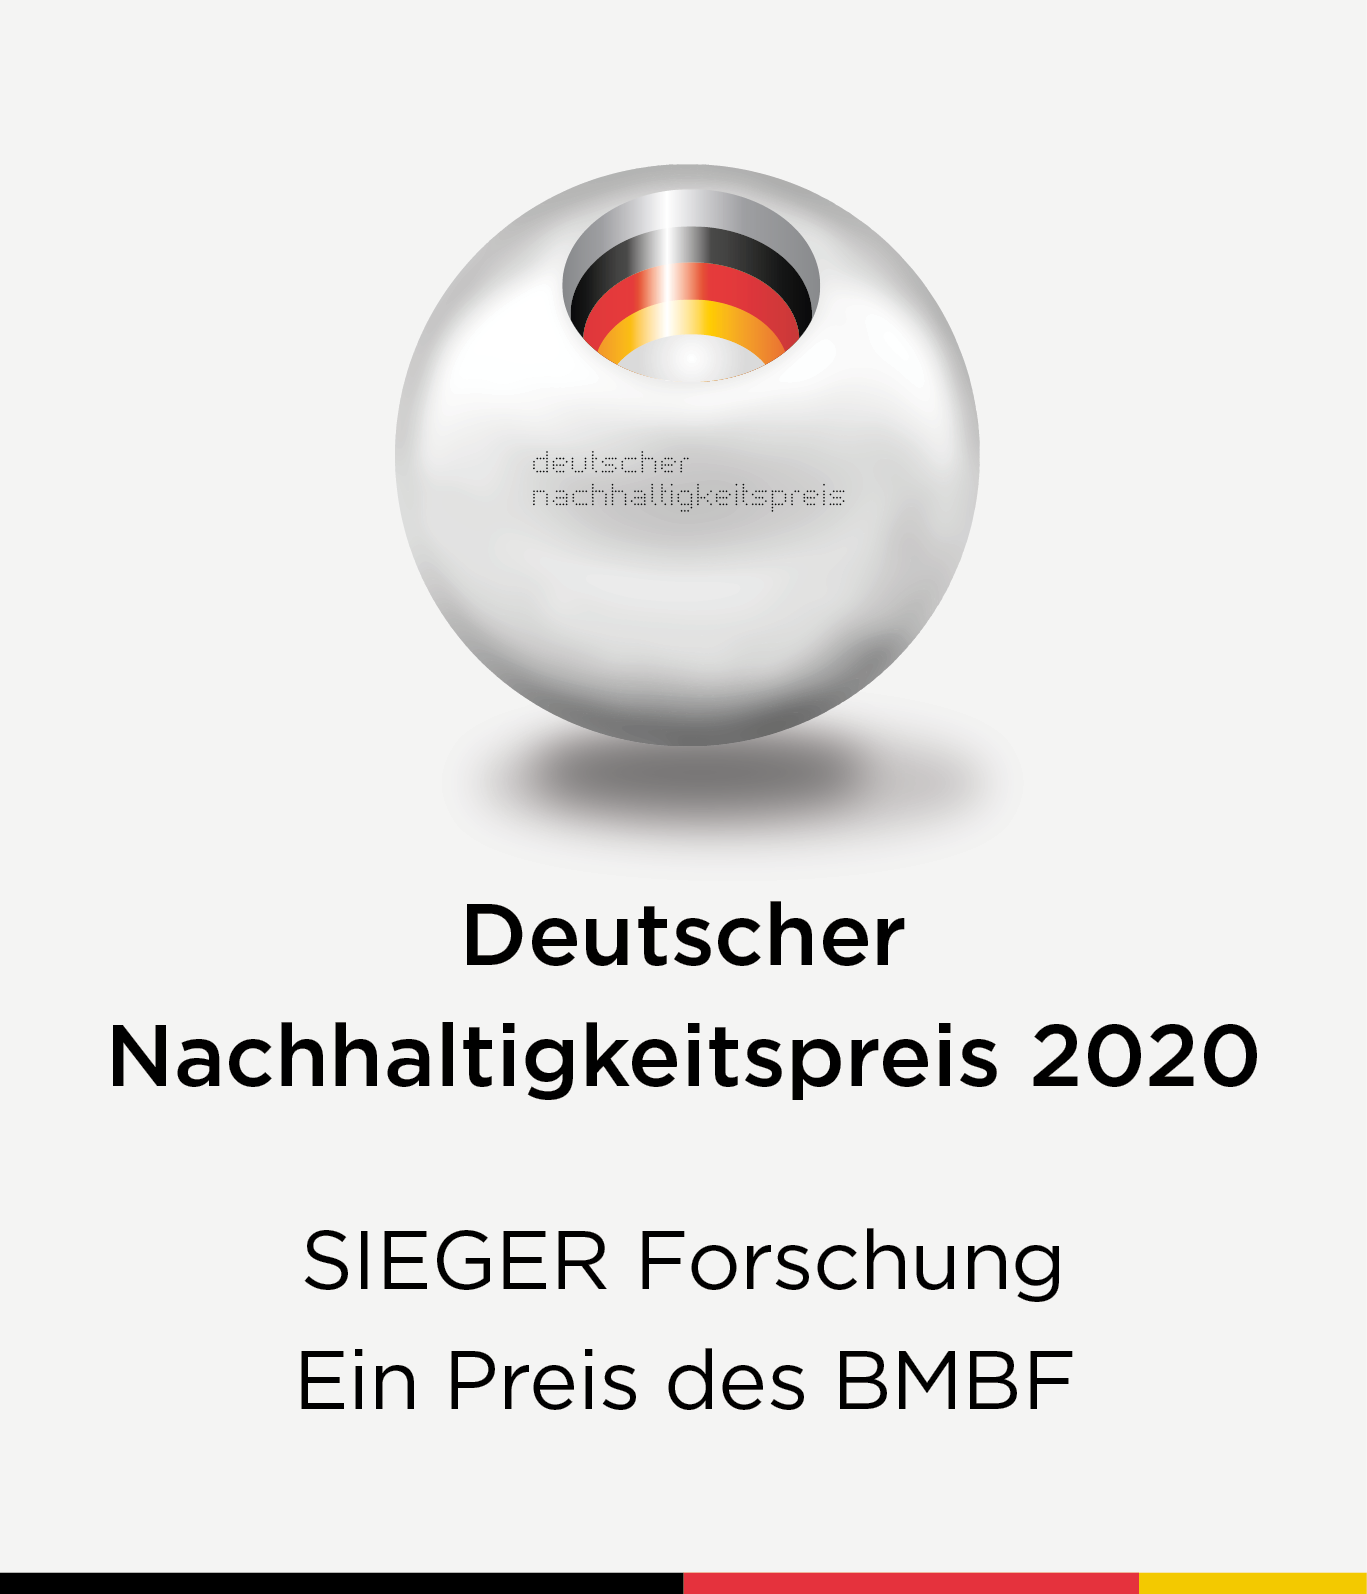 Logo des Deutschen Nachhaltigkeitspreis 2020. Darunter der Text: "Sieger Forschung. Ein Preis des BMBF."